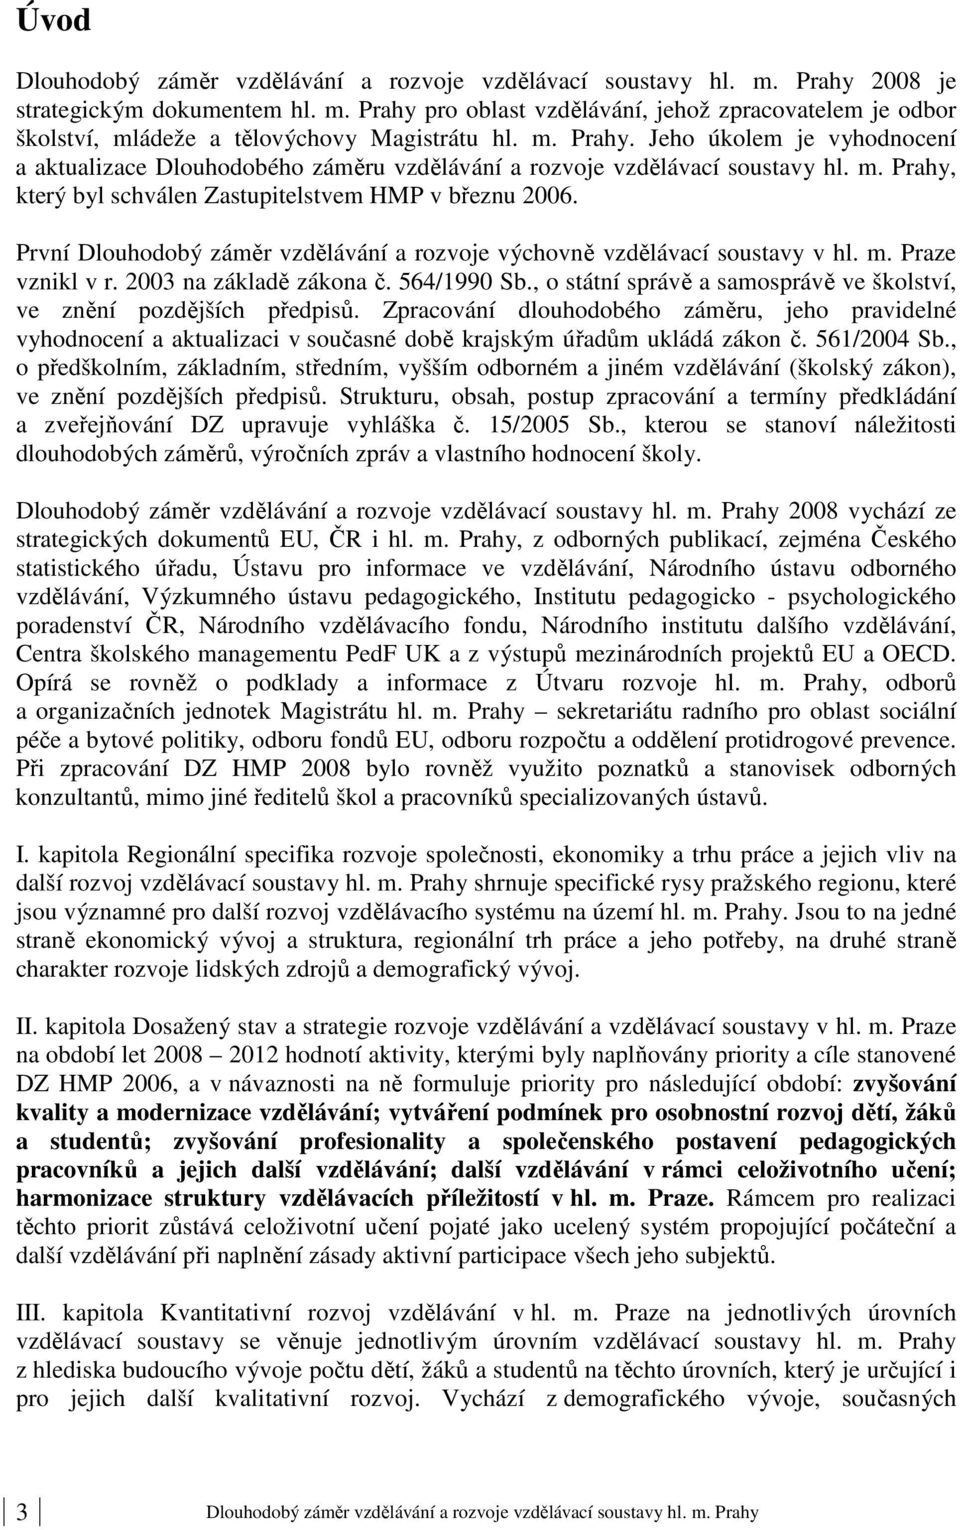 První Dlouhodobý záměr vzdělávání a rozvoje výchovně vzdělávací soustavy v hl. m. Praze vznikl v r. 2003 na základě zákona č. 564/1990 Sb.